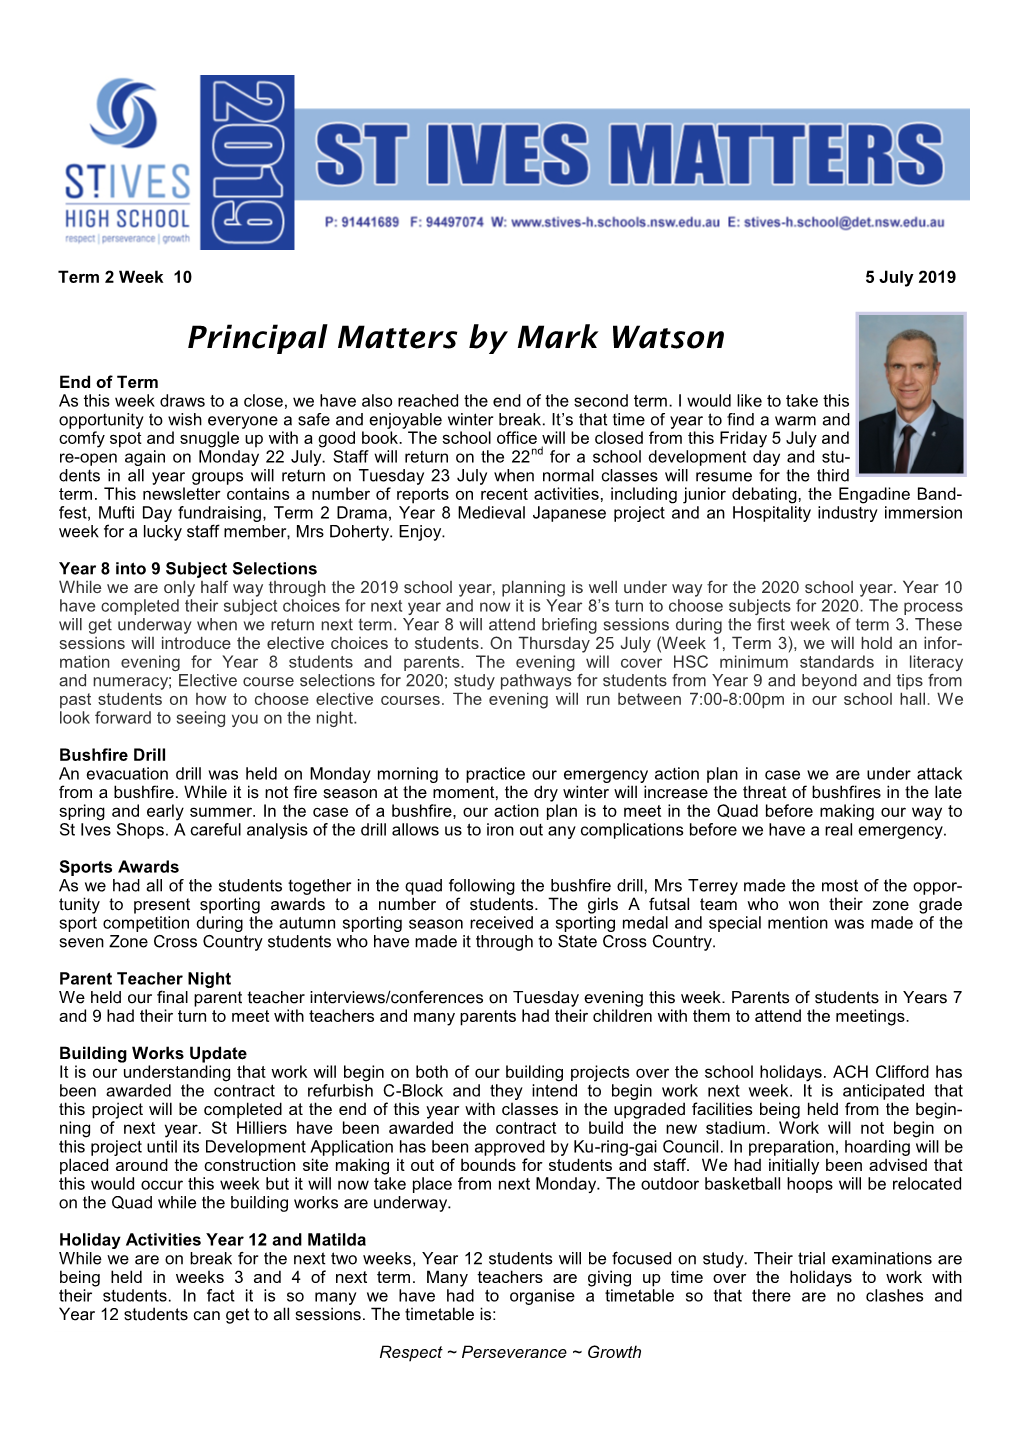 Principal Matters by Mark Watson